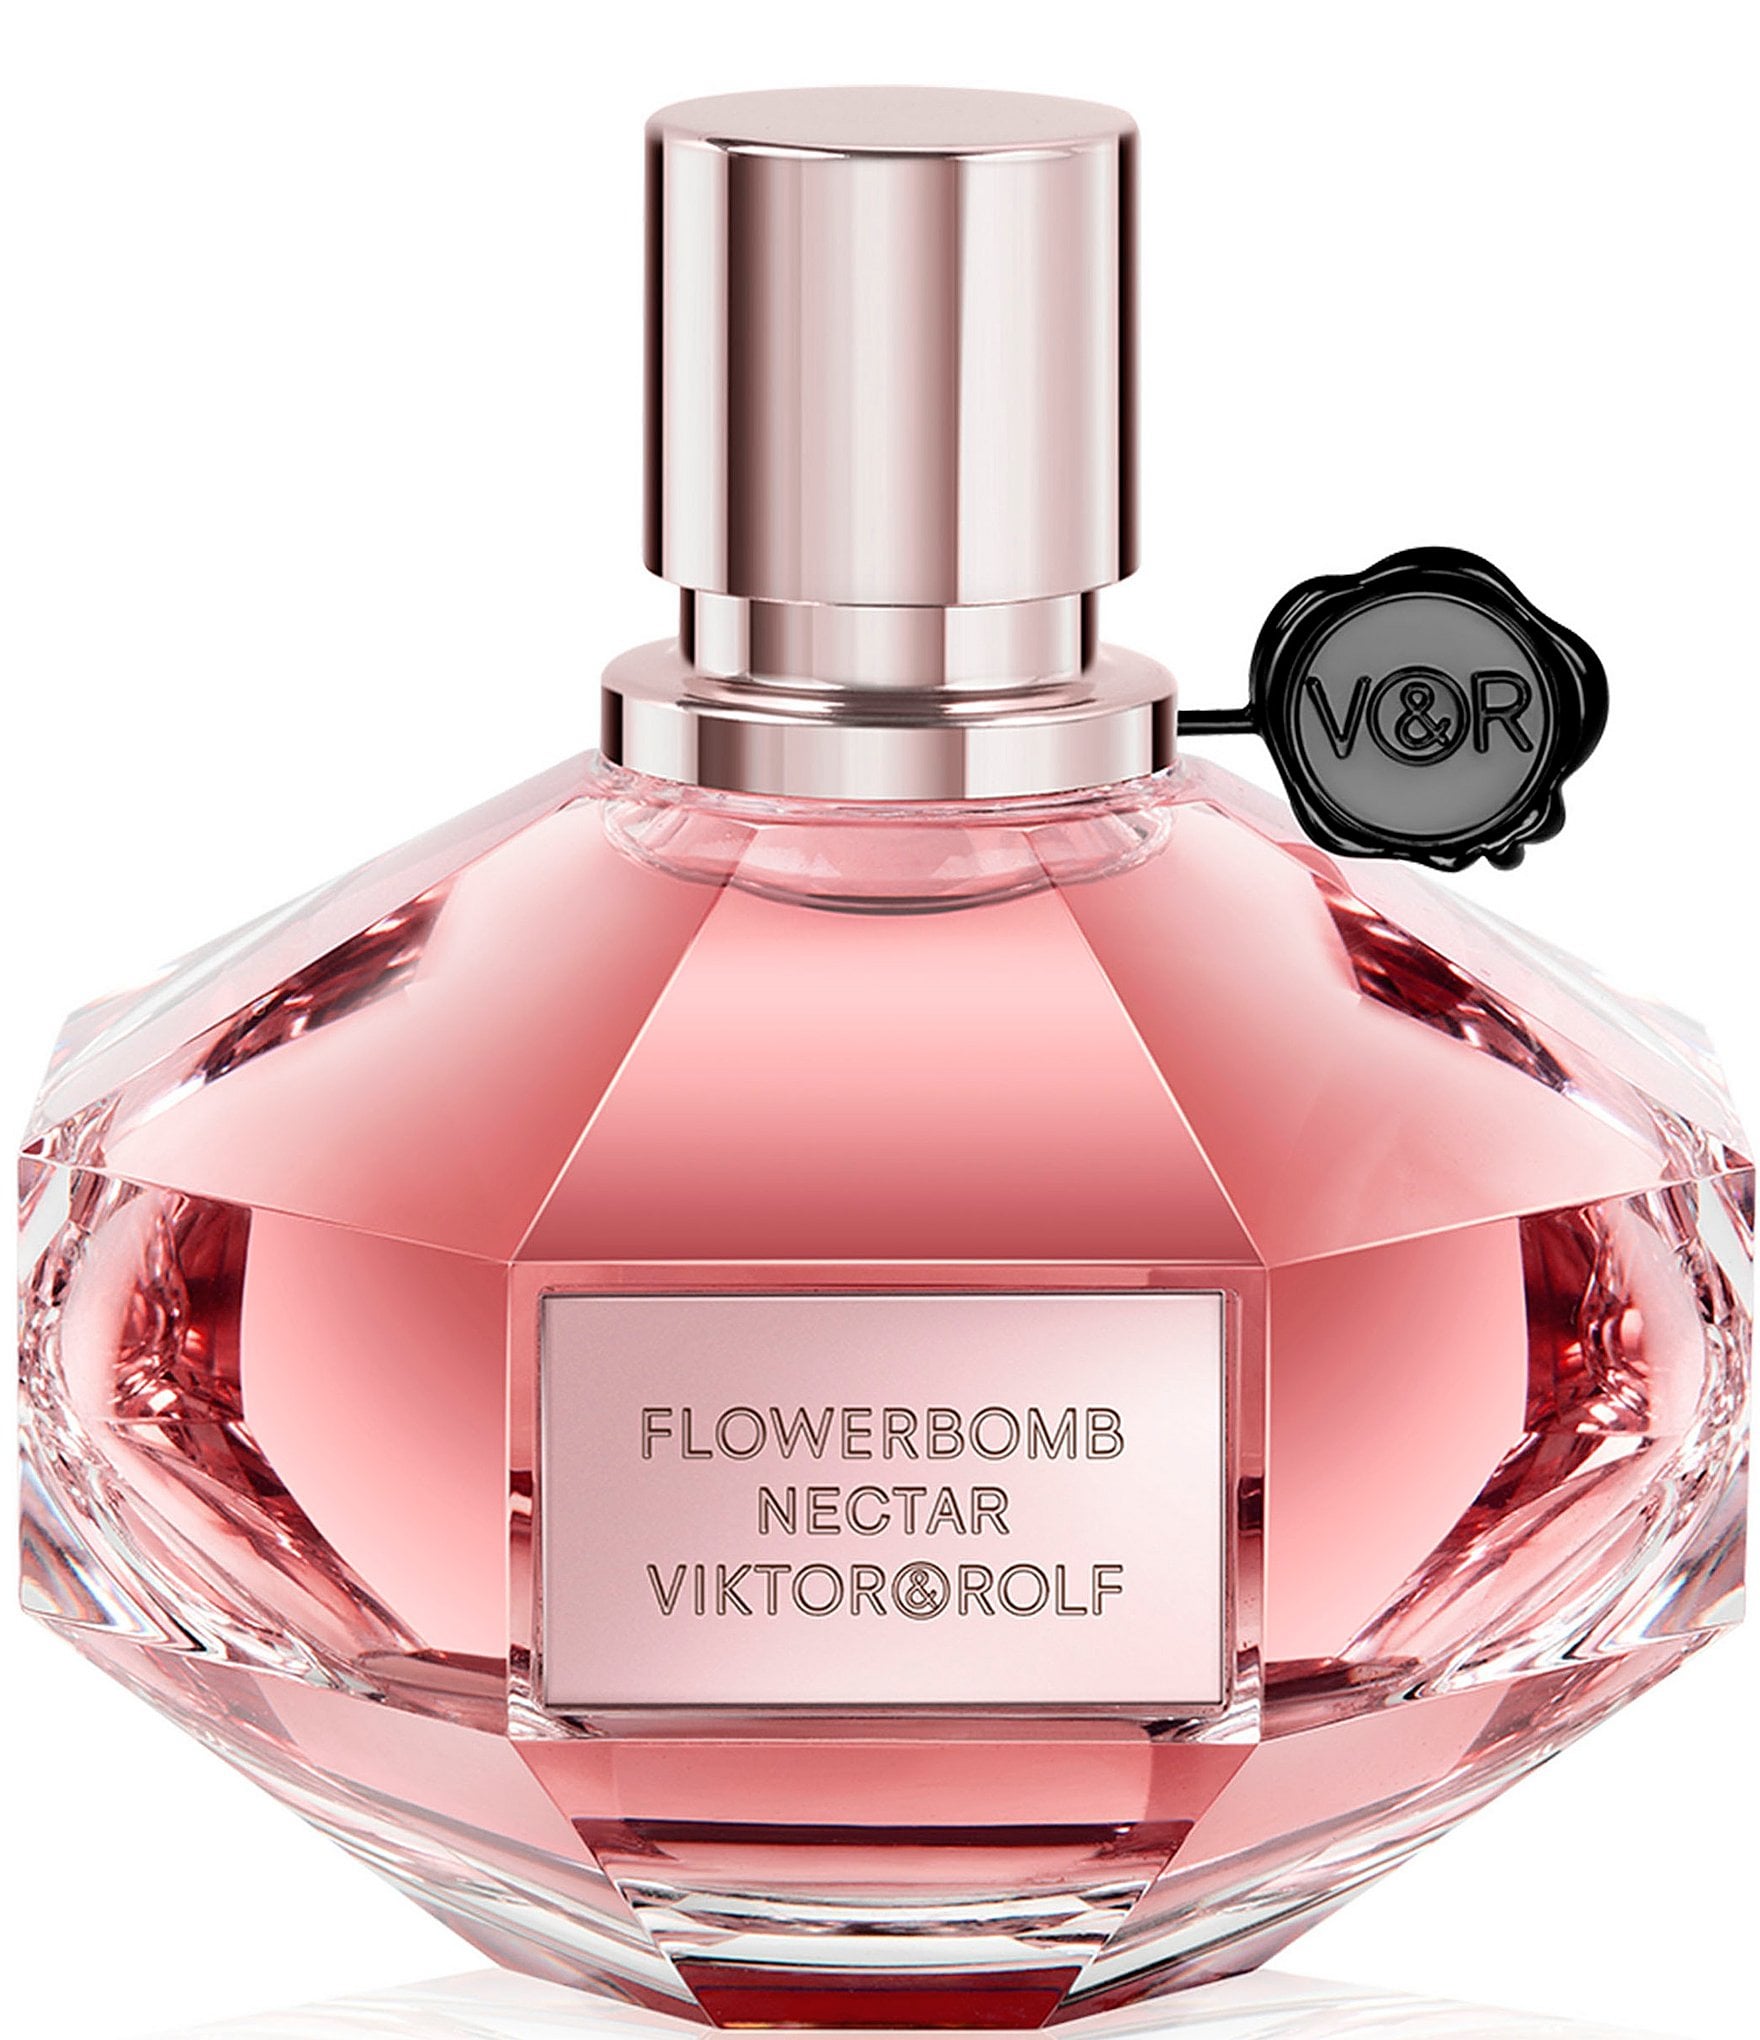 Viktor Rolf Flowerbomb Nectar Eau De Parfum Intense Dillard S